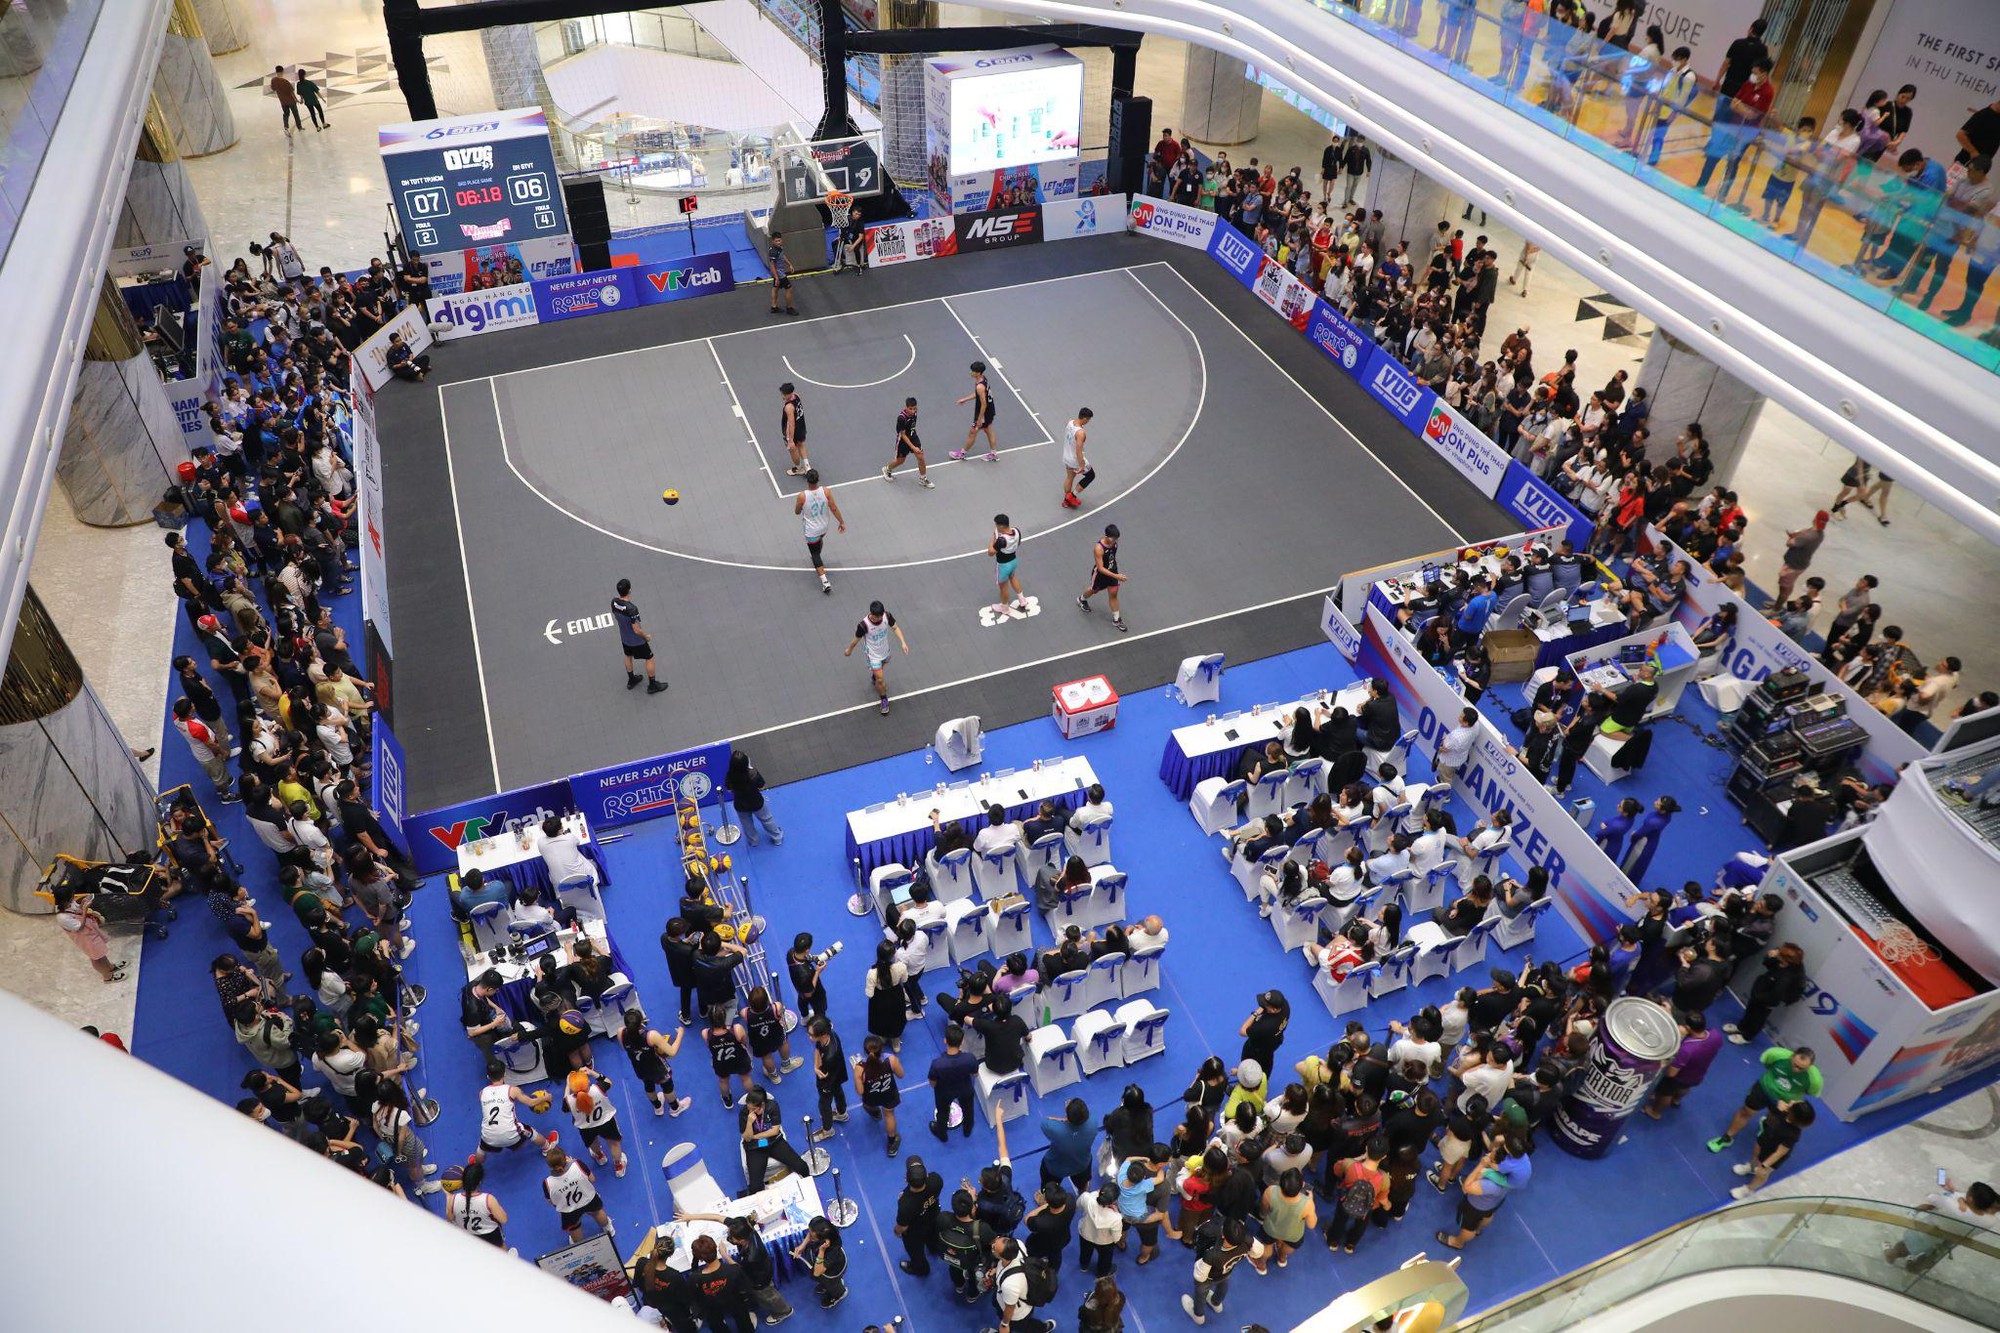 Lần đầu tiên tại Việt Nam: Giải bóng rổ 3x3 được tổ chức tại trung tâm thương mại - Ảnh 2.